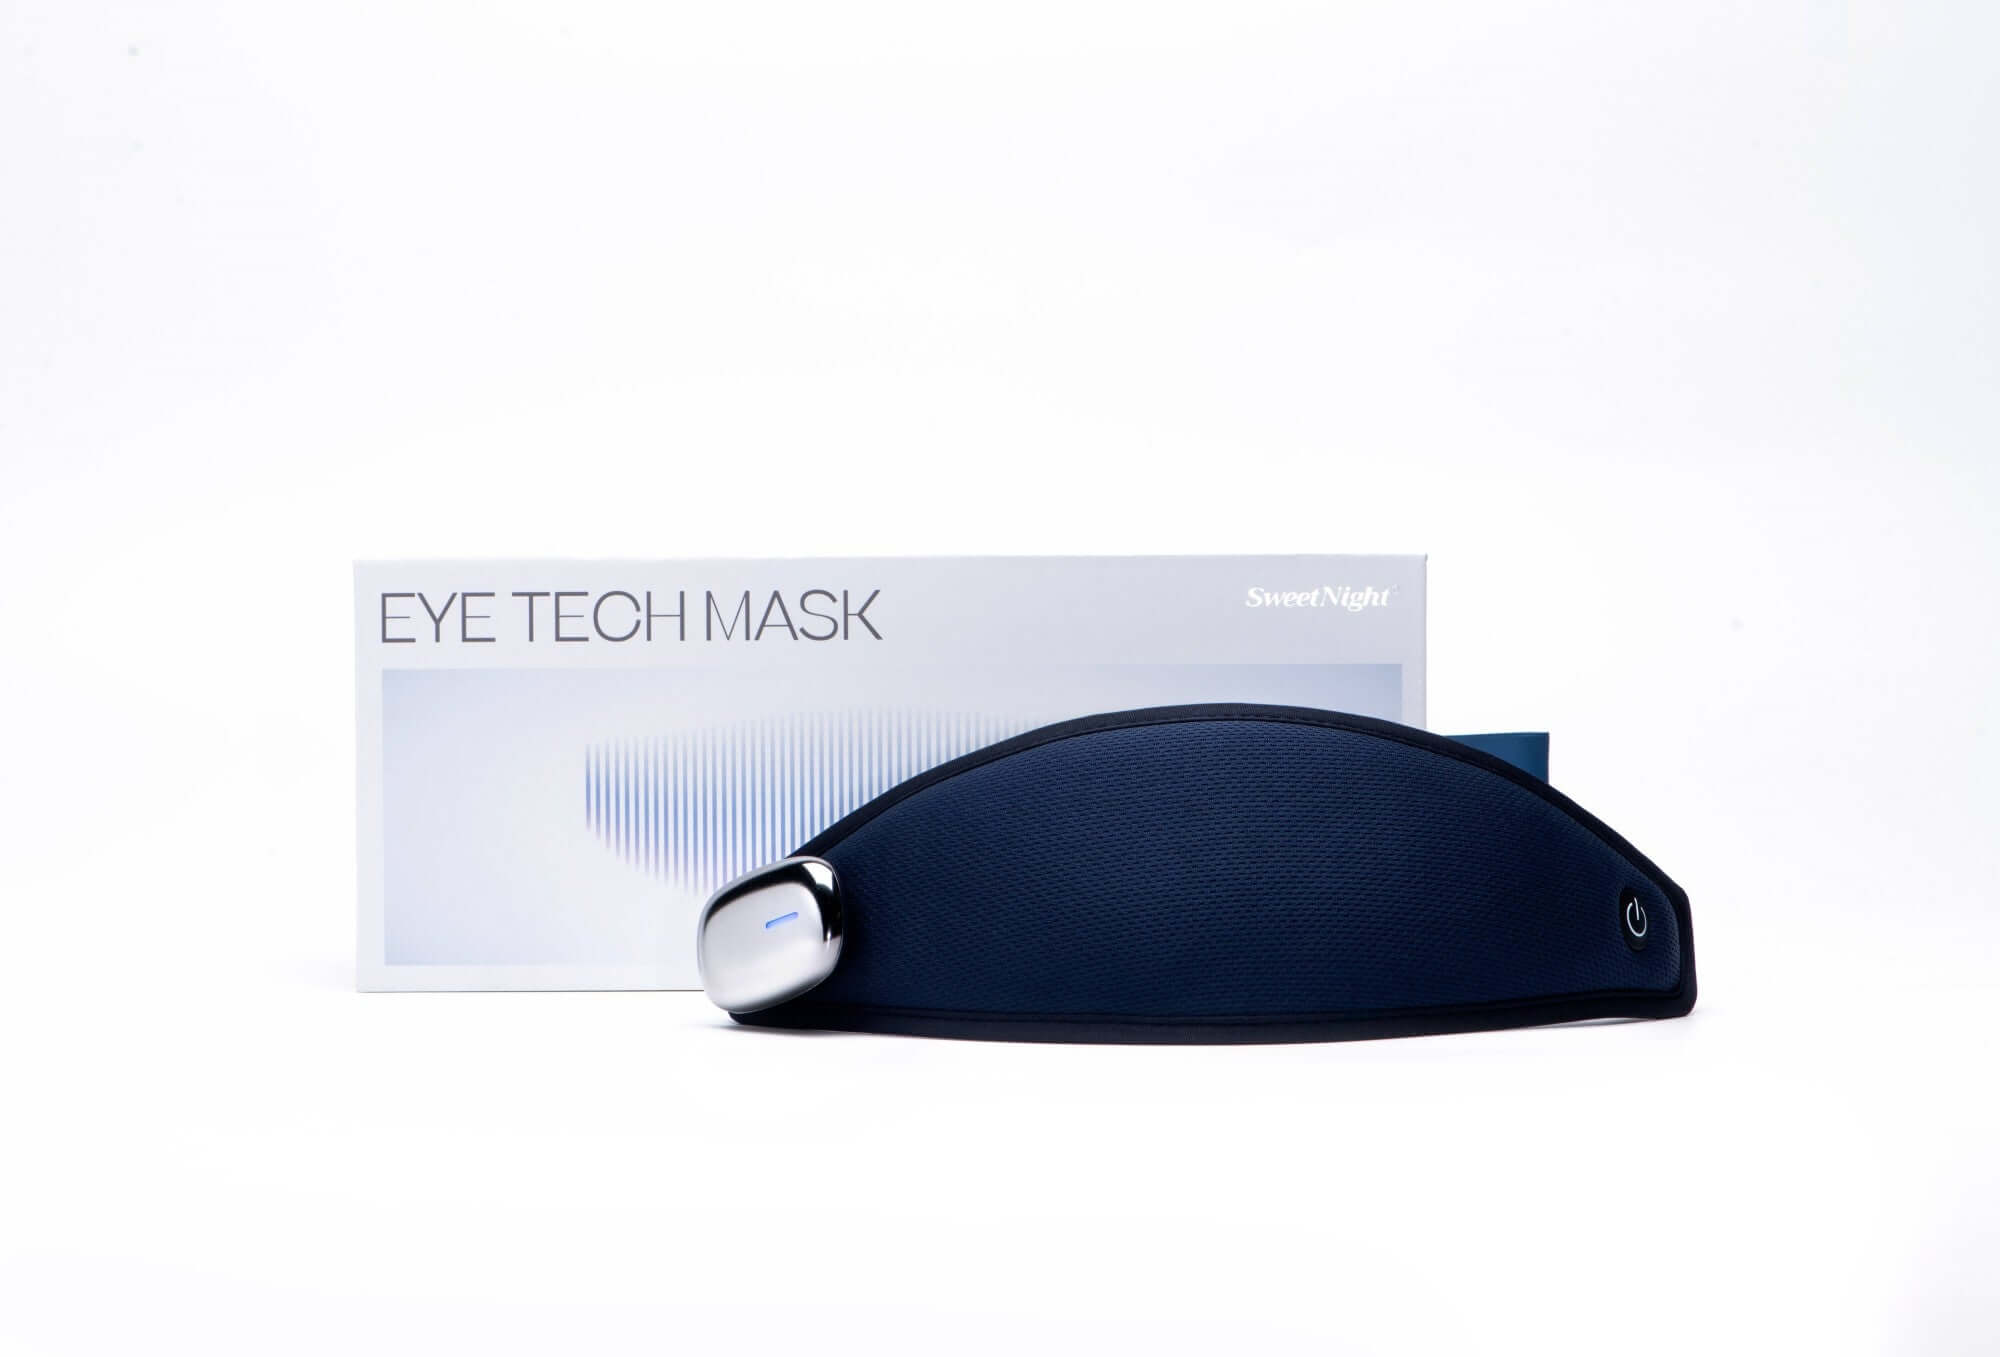 Eye Tech Mask